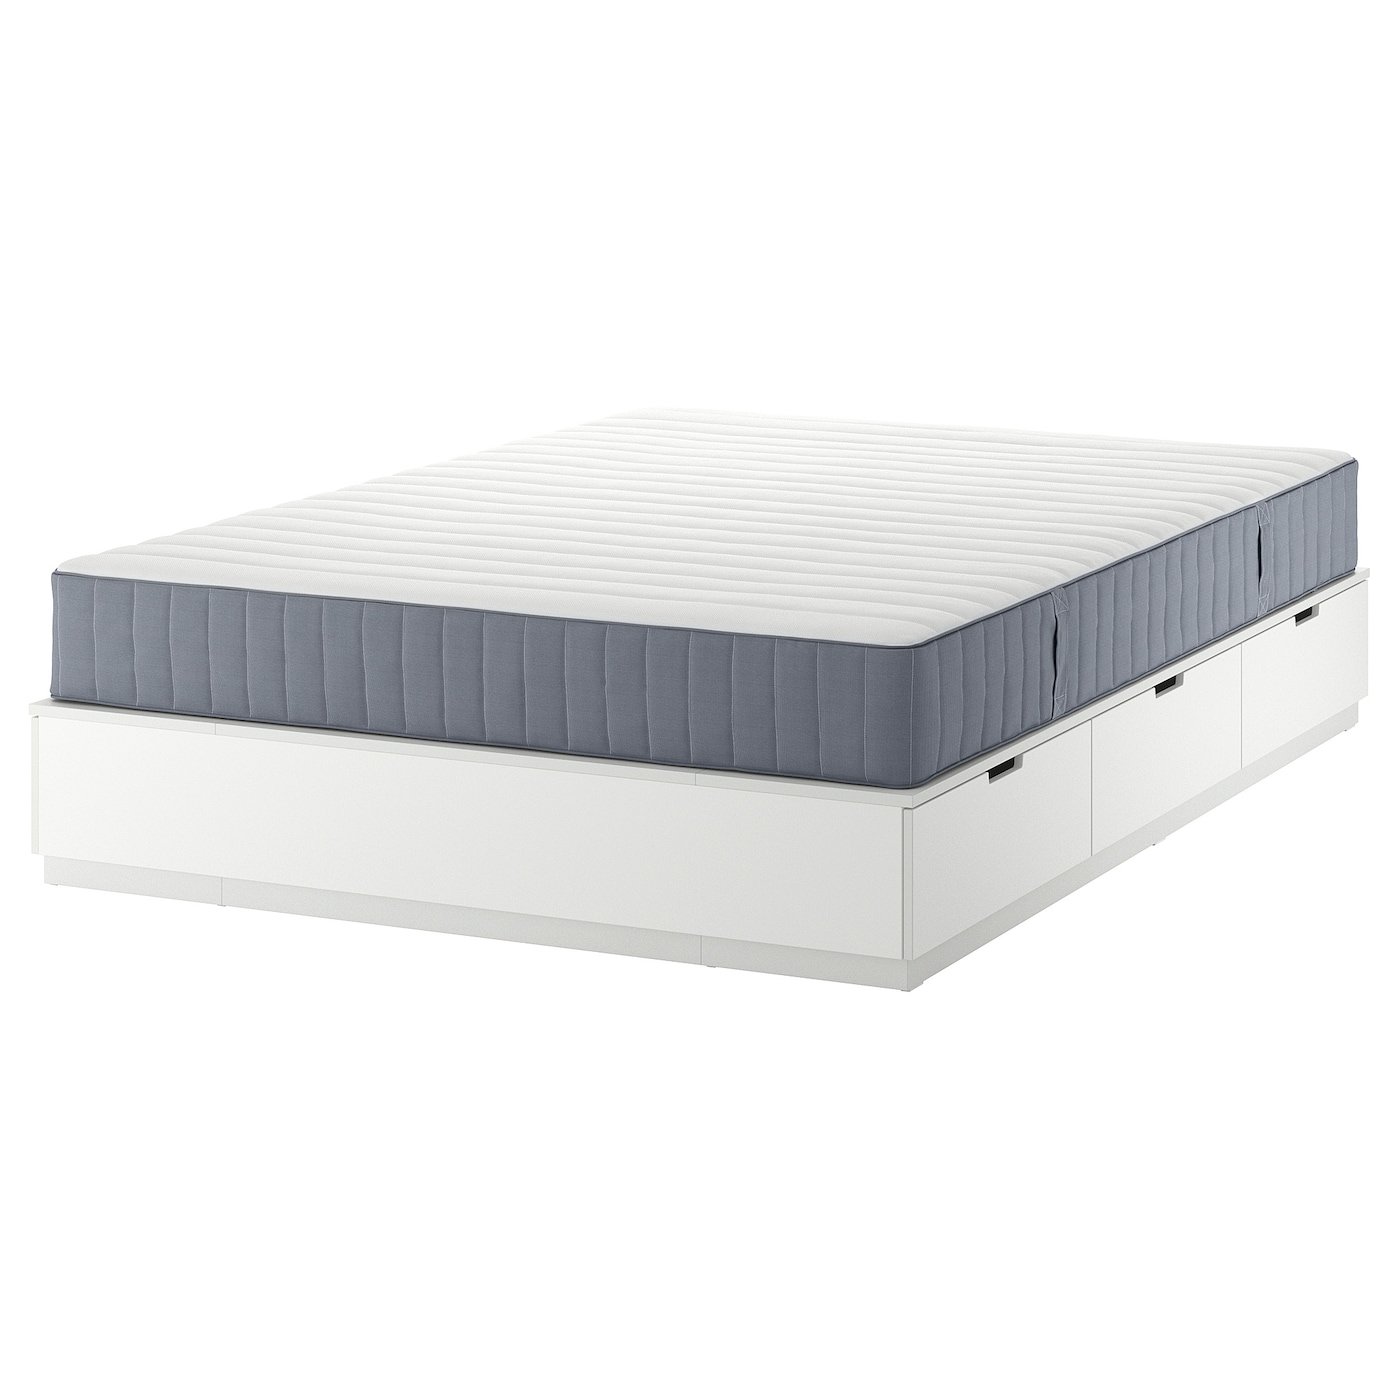 Каркас кровати с ящиком для хранения и матрасом - IKEA NORDLI, 200х140 см, матрас жесткий, белый, НОРДЛИ ИКЕА